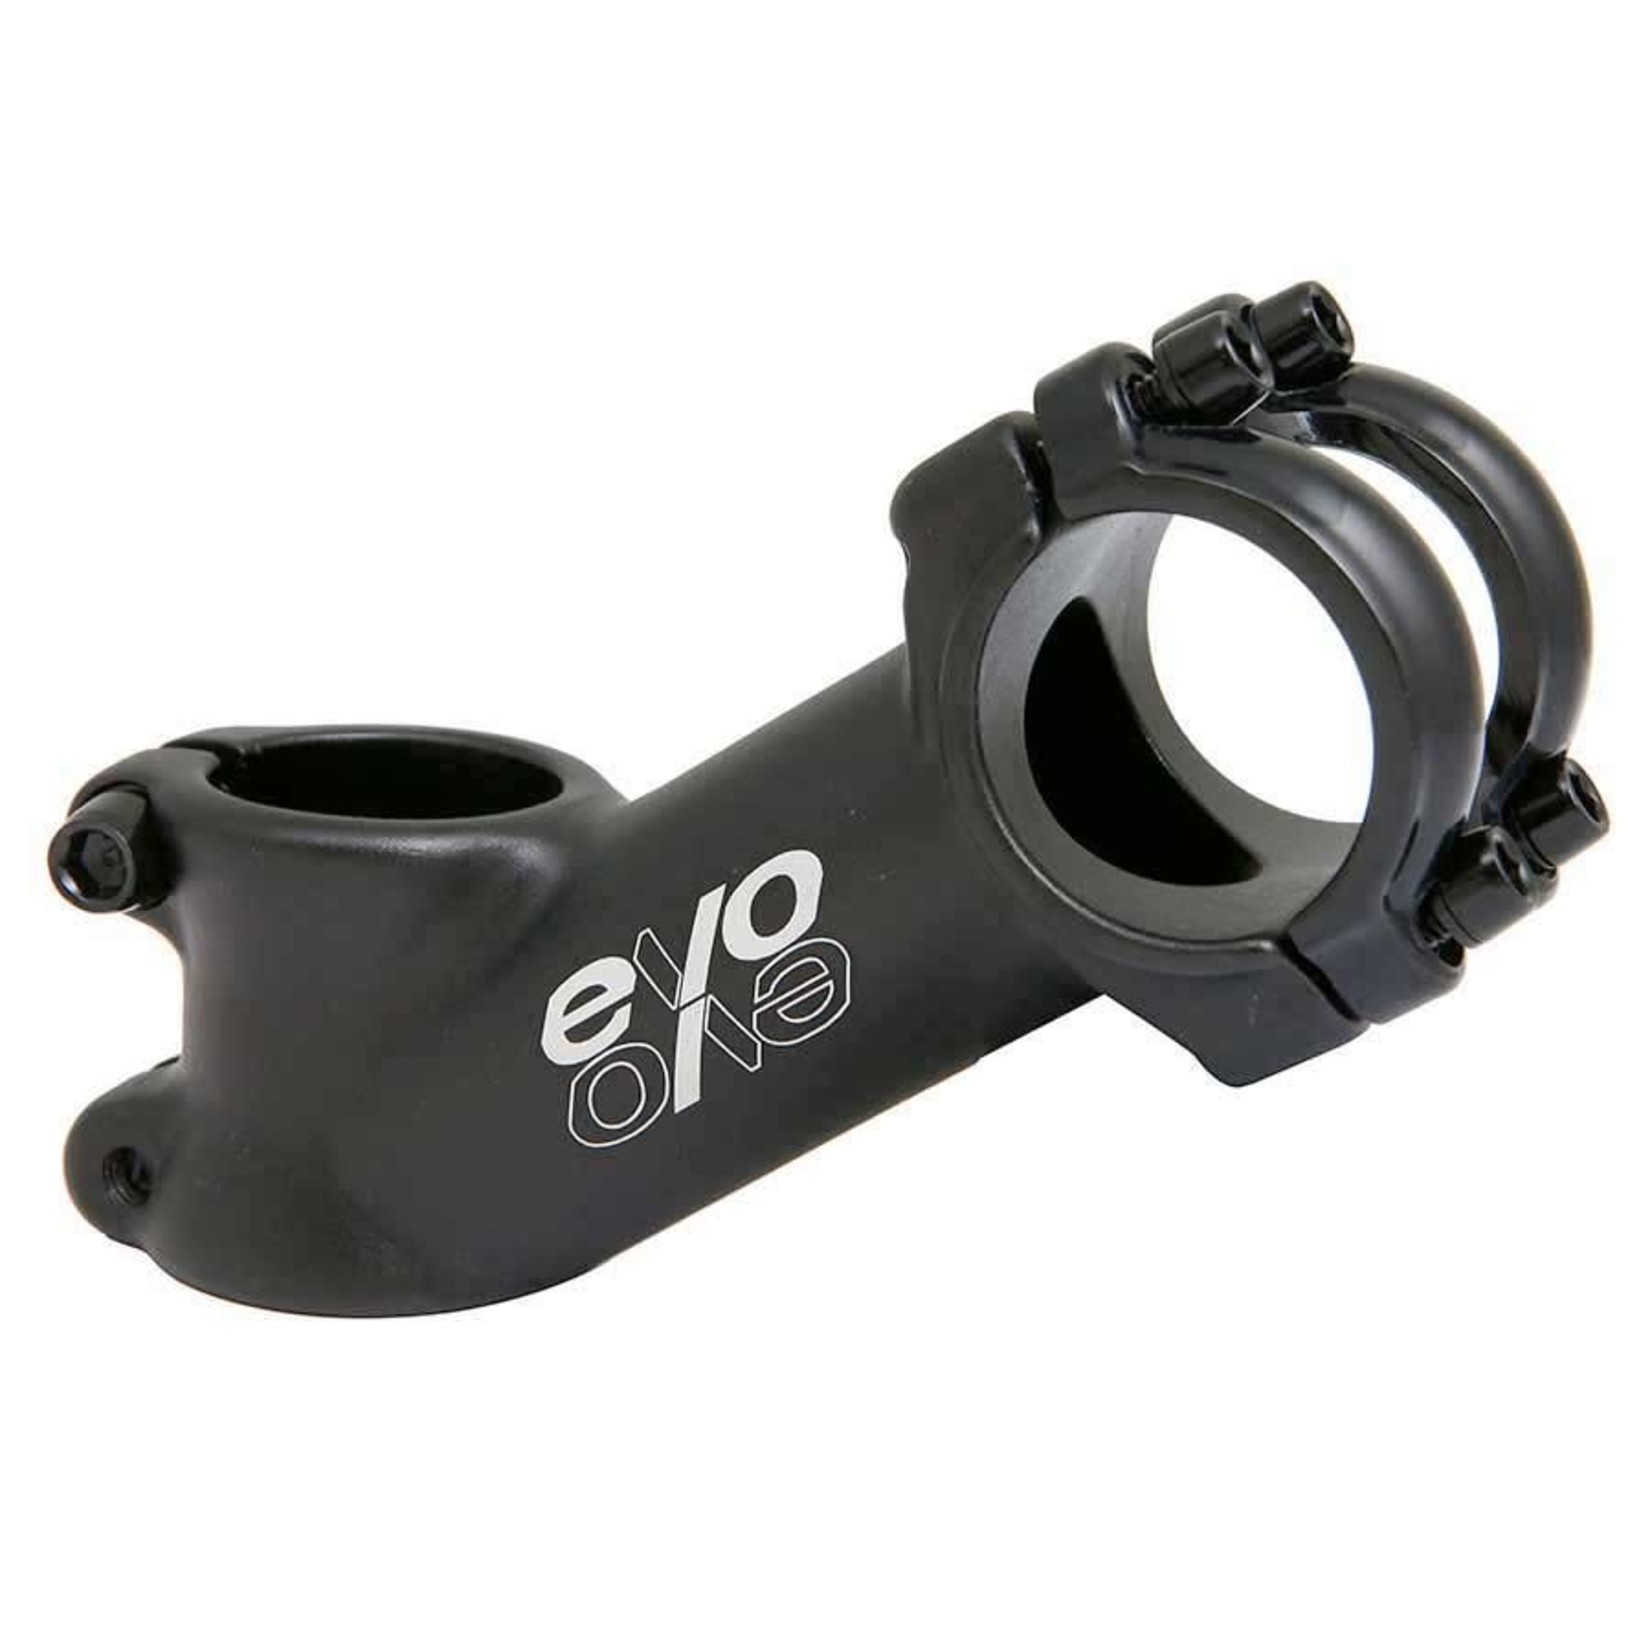 EVO EVO E-Tec OS Stem 31.8mm, 35 Degree